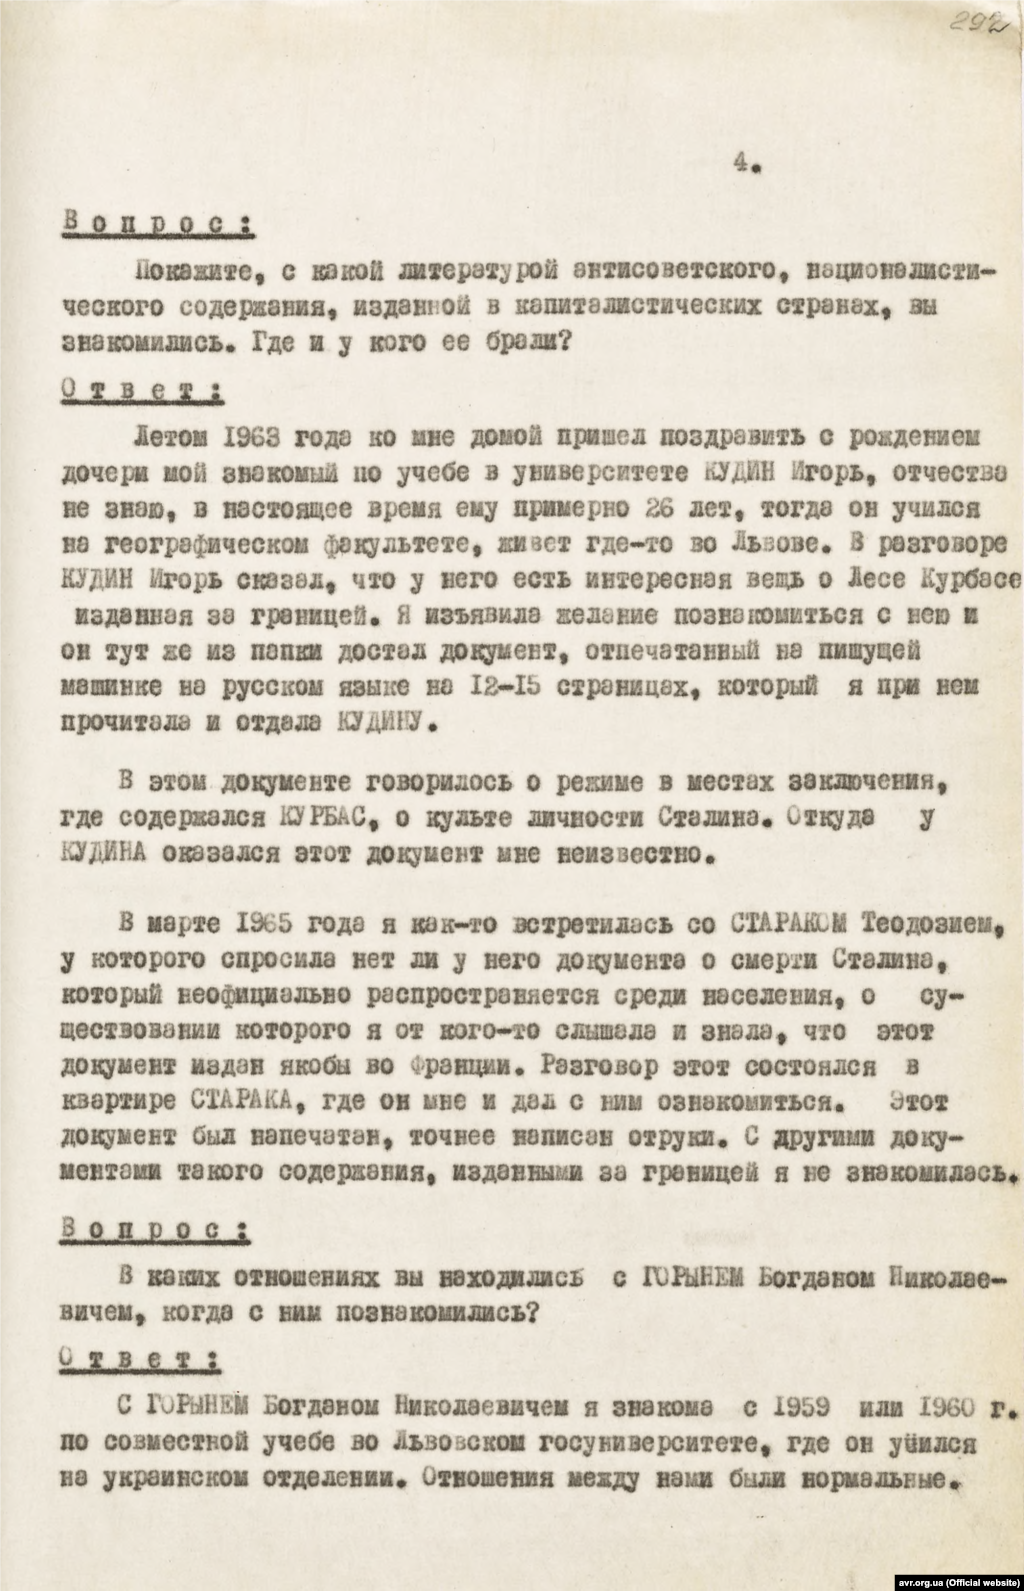 Копія протоколу допиту свідка Ірини Калинець в рамках кримінального провадження стосовно Богдана Гориня від 11 листопада 1965 року (стр. 4)